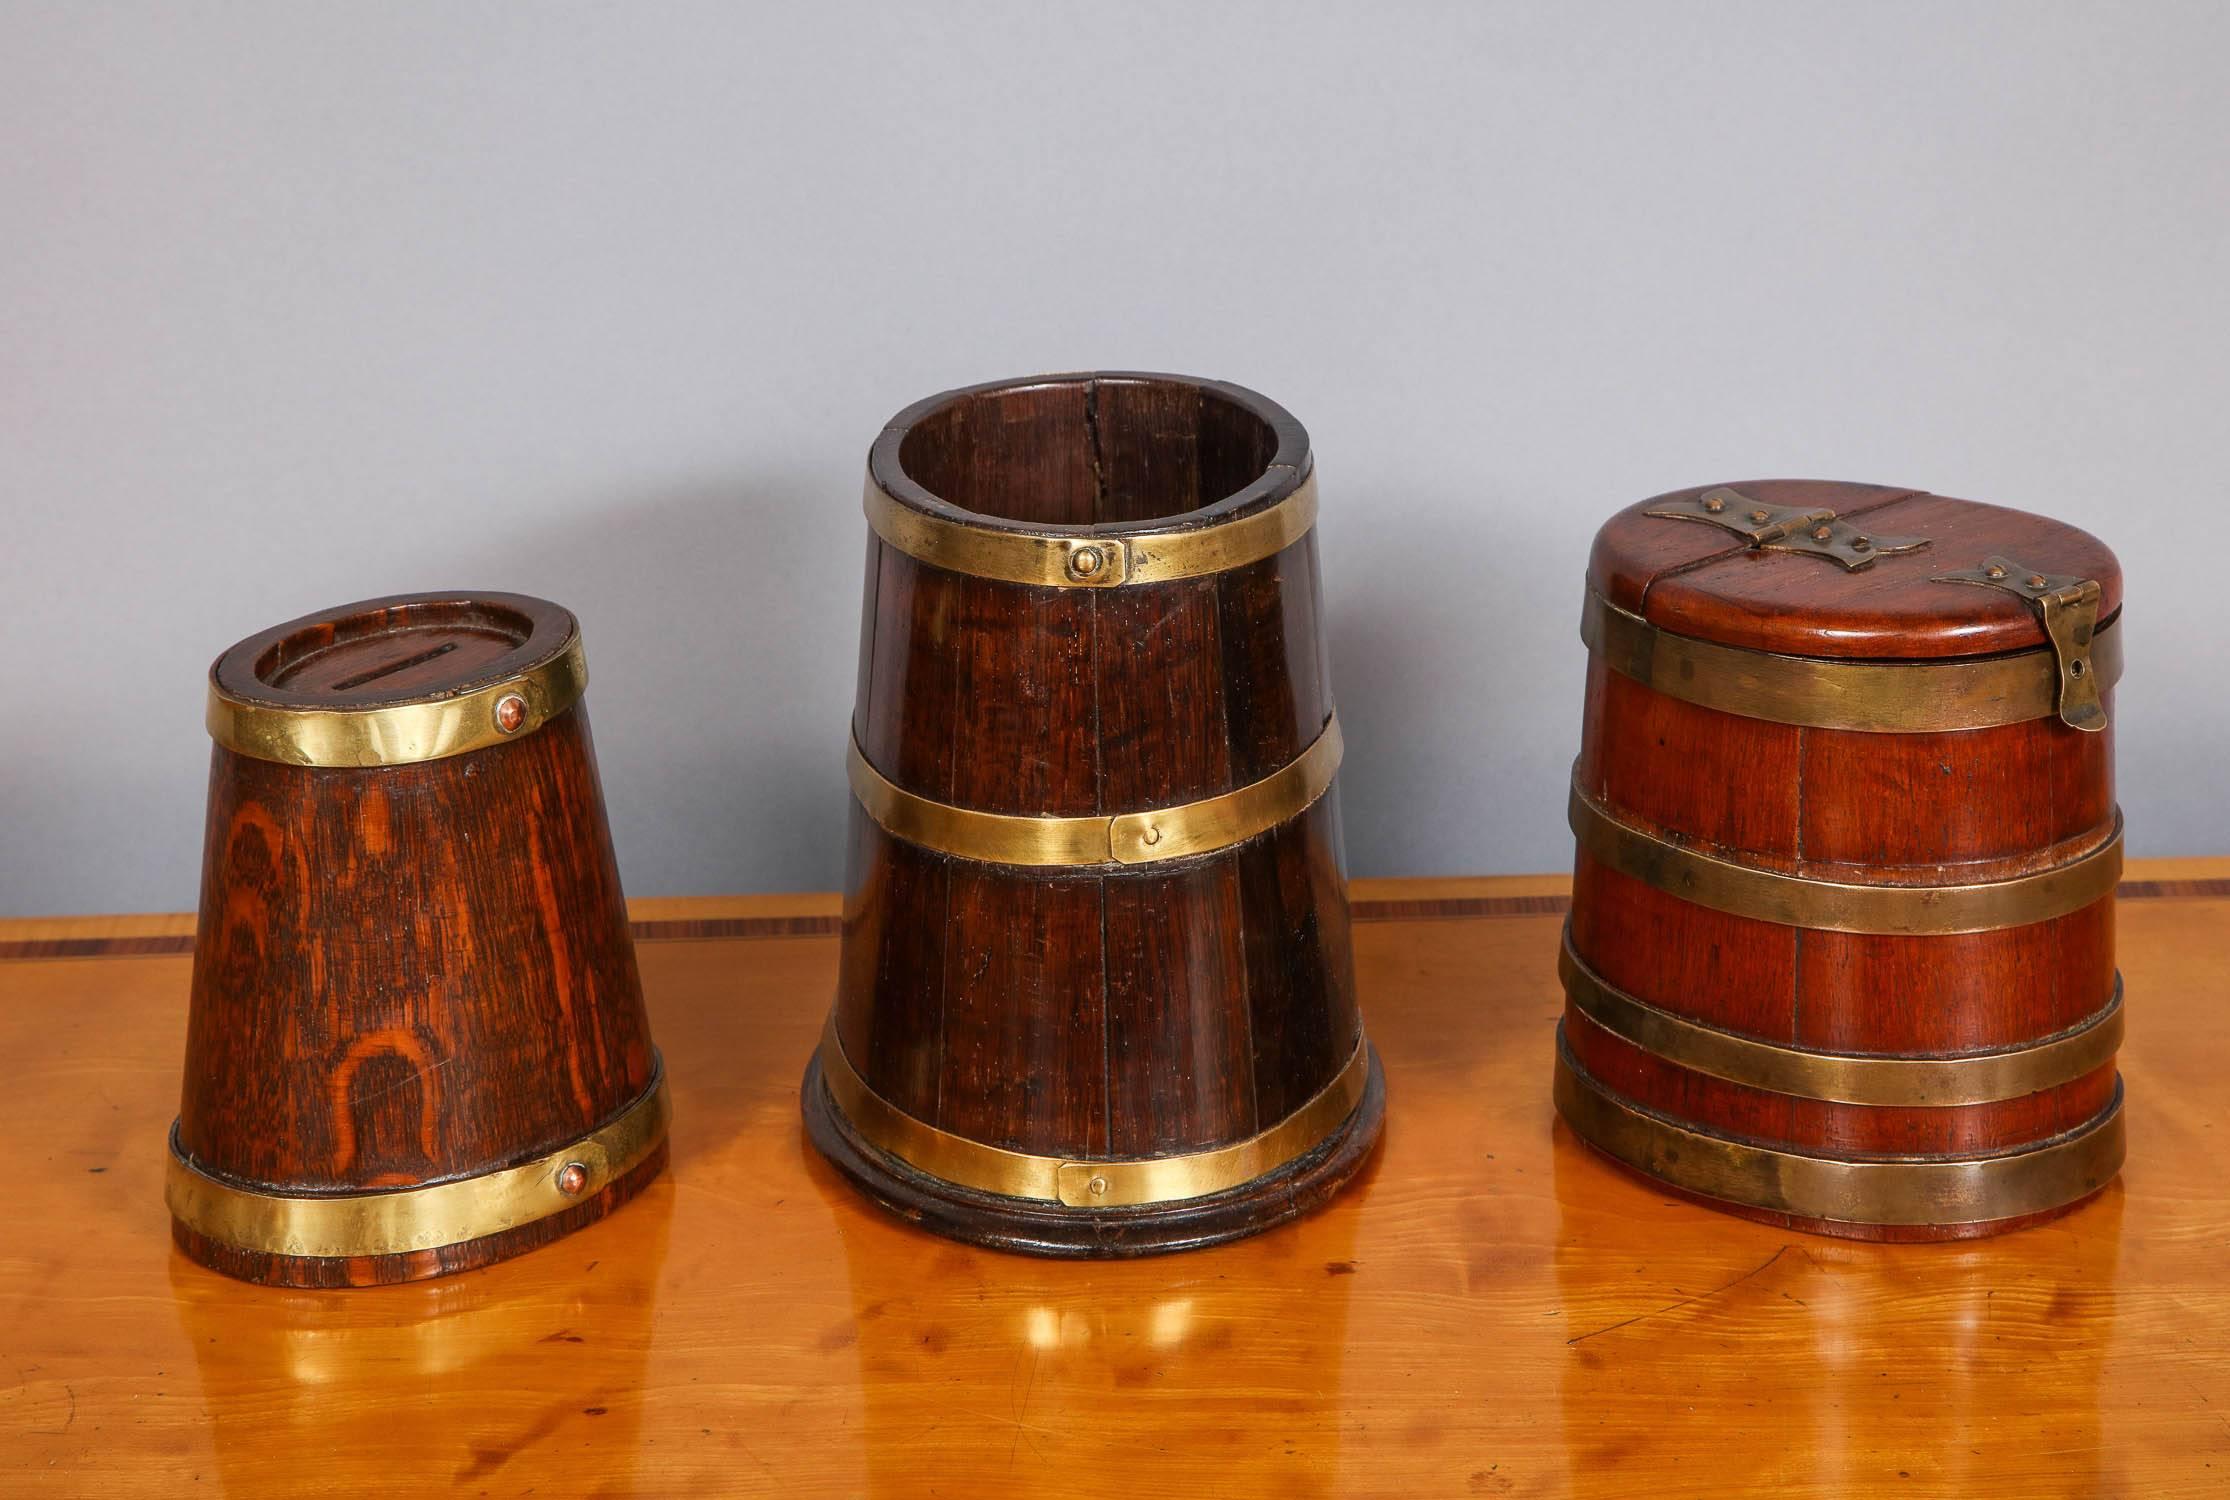 Belle collection de trois récipients en laiton du 19ème siècle, tous de forme ovale et évasée, le premier (avec deux bandes) est une tirelire en chêne en forme de tonneau de tabac de bateau, le second (trois bandes) est un récipient ouvert en acajou